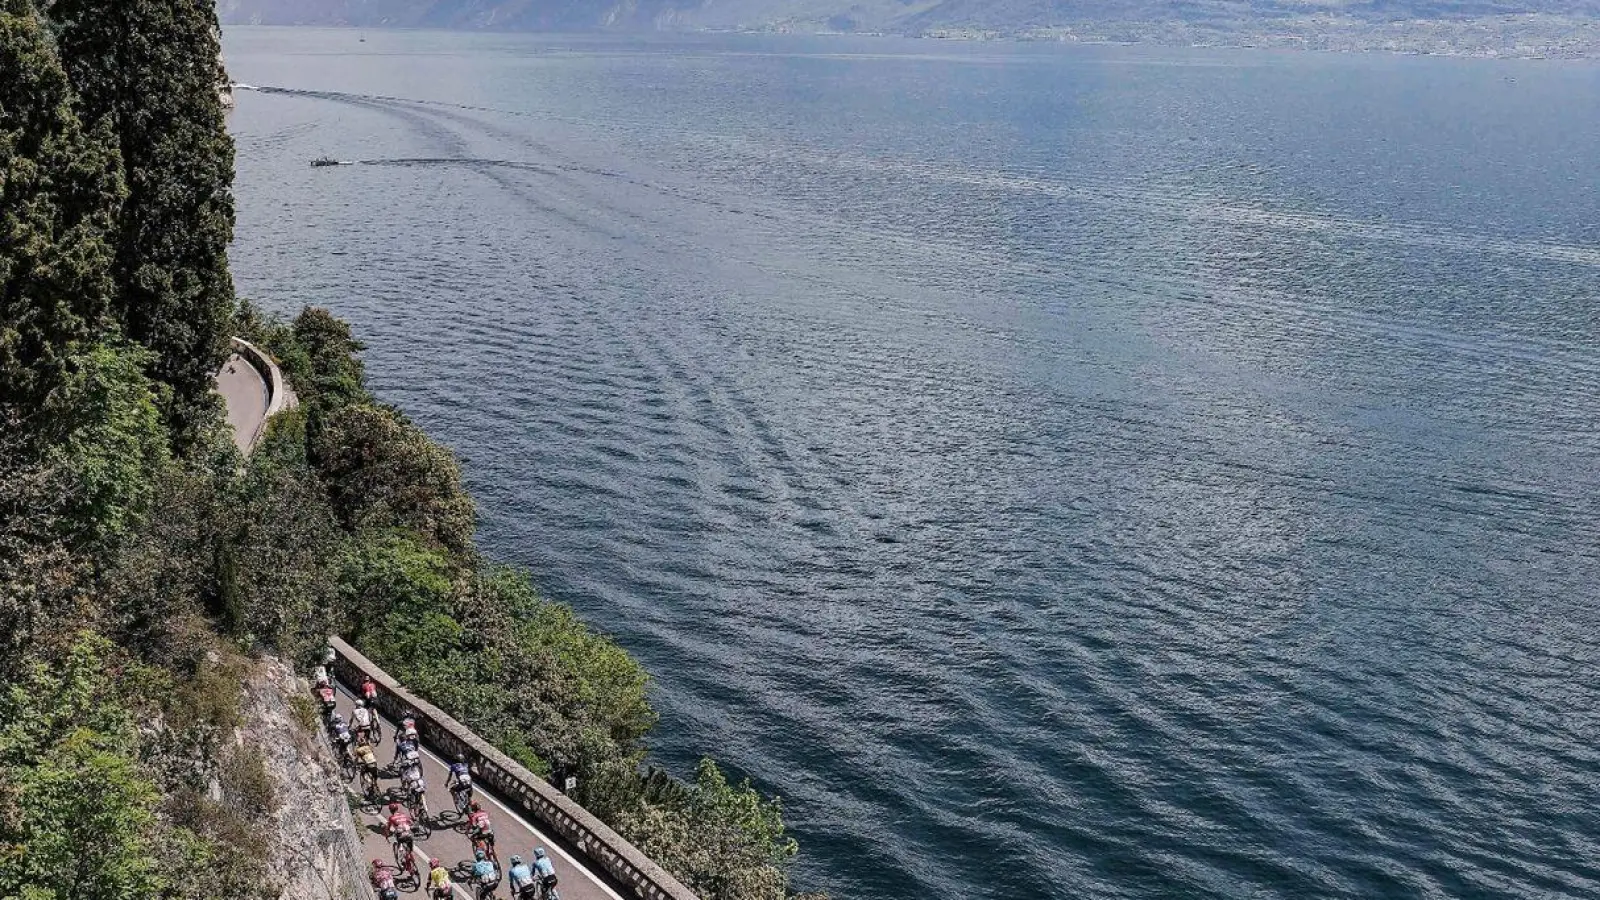 Der Gardasee ist derzeit so voll wie seit langem nicht mehr. (Foto: Marco Alpozzi/LaPresse via ZUMA Press/dpa)